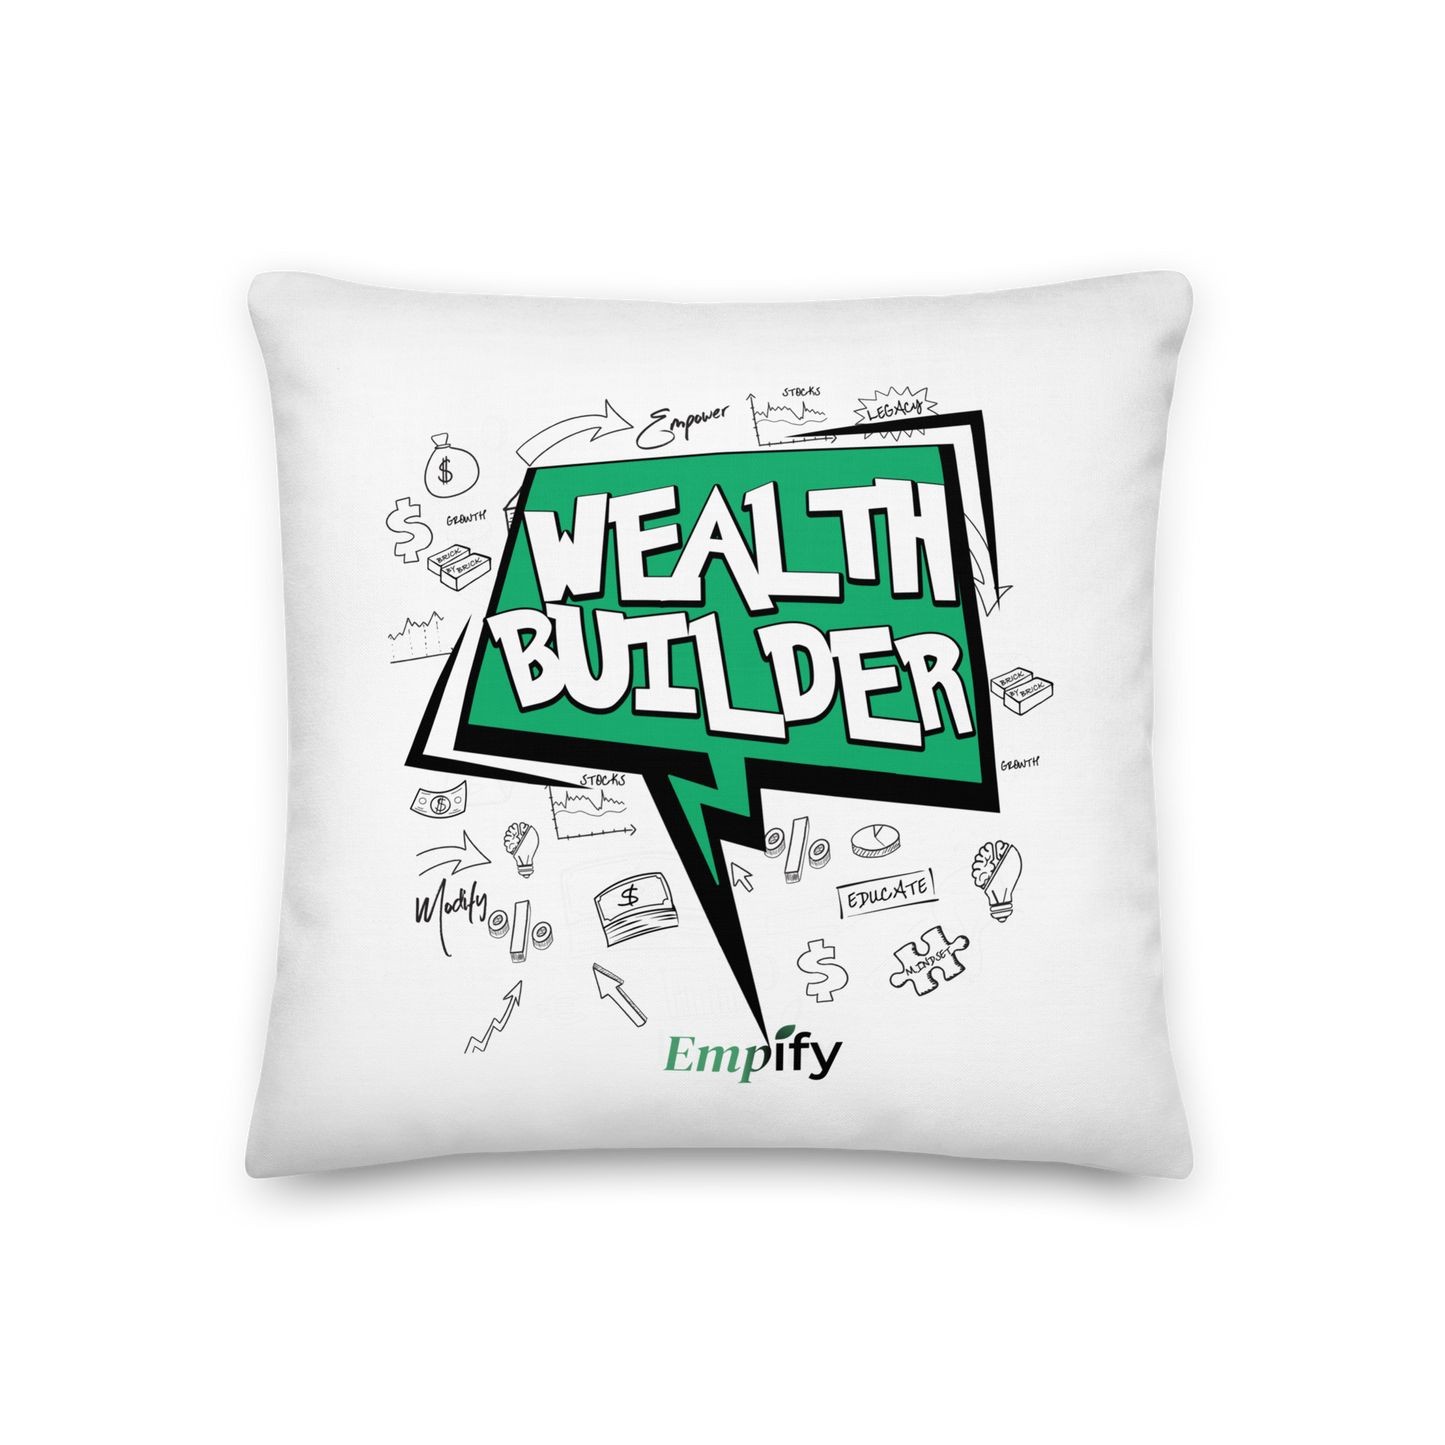 Wealth Builder Pillow